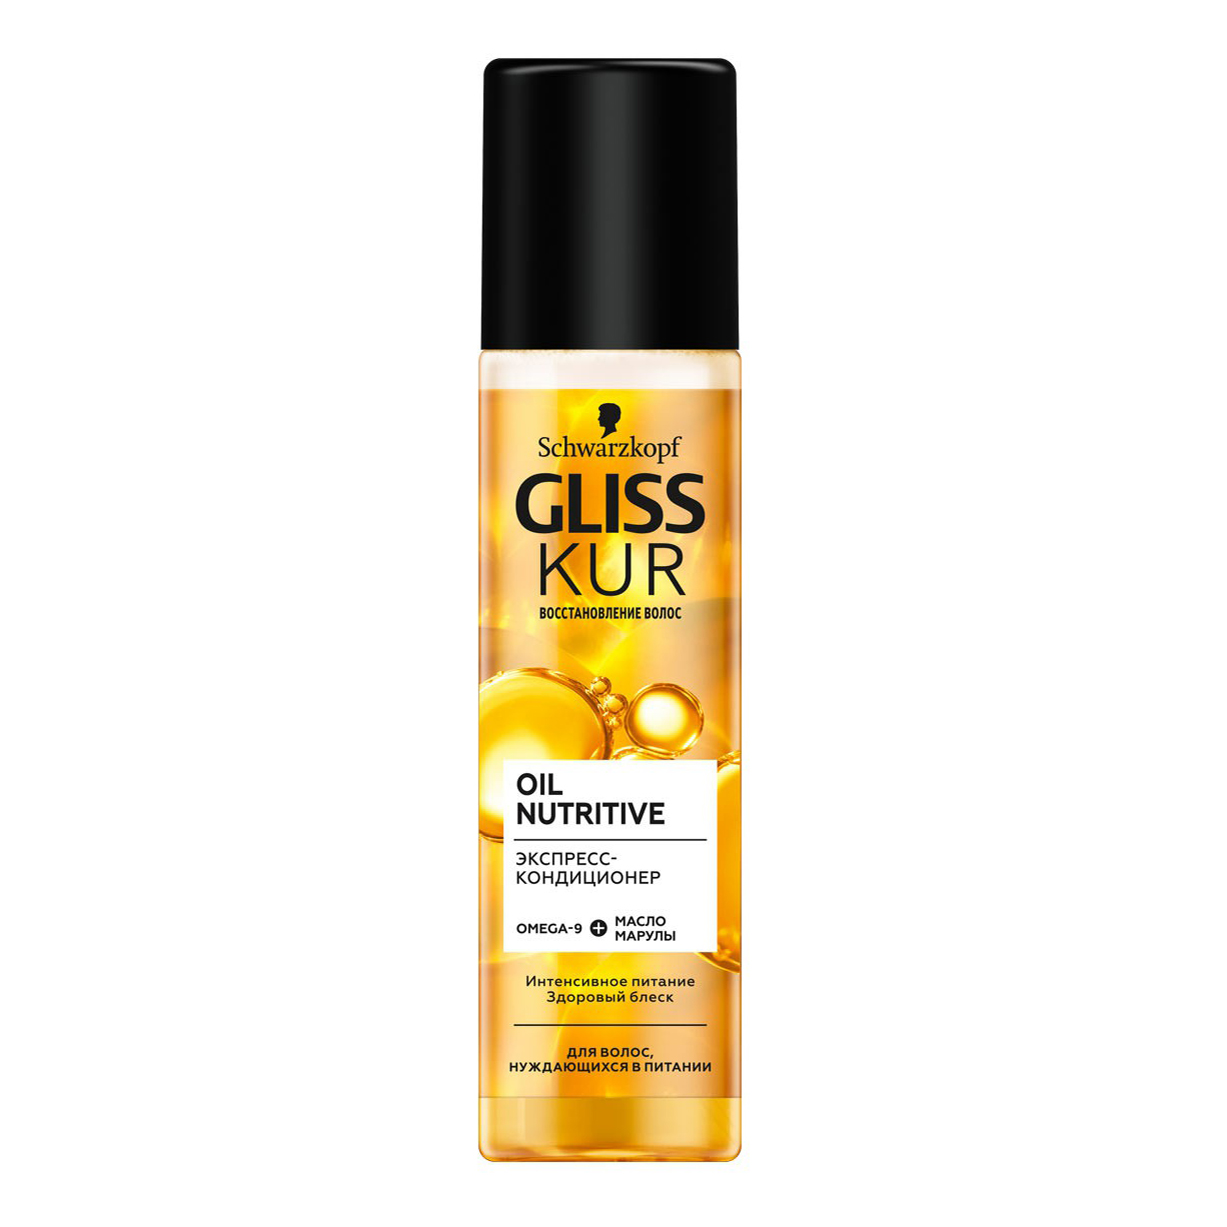 Купить Кондиционер Gliss Kur Oil Nutritive против секущихся кончиков для поврежденных волос 200мл